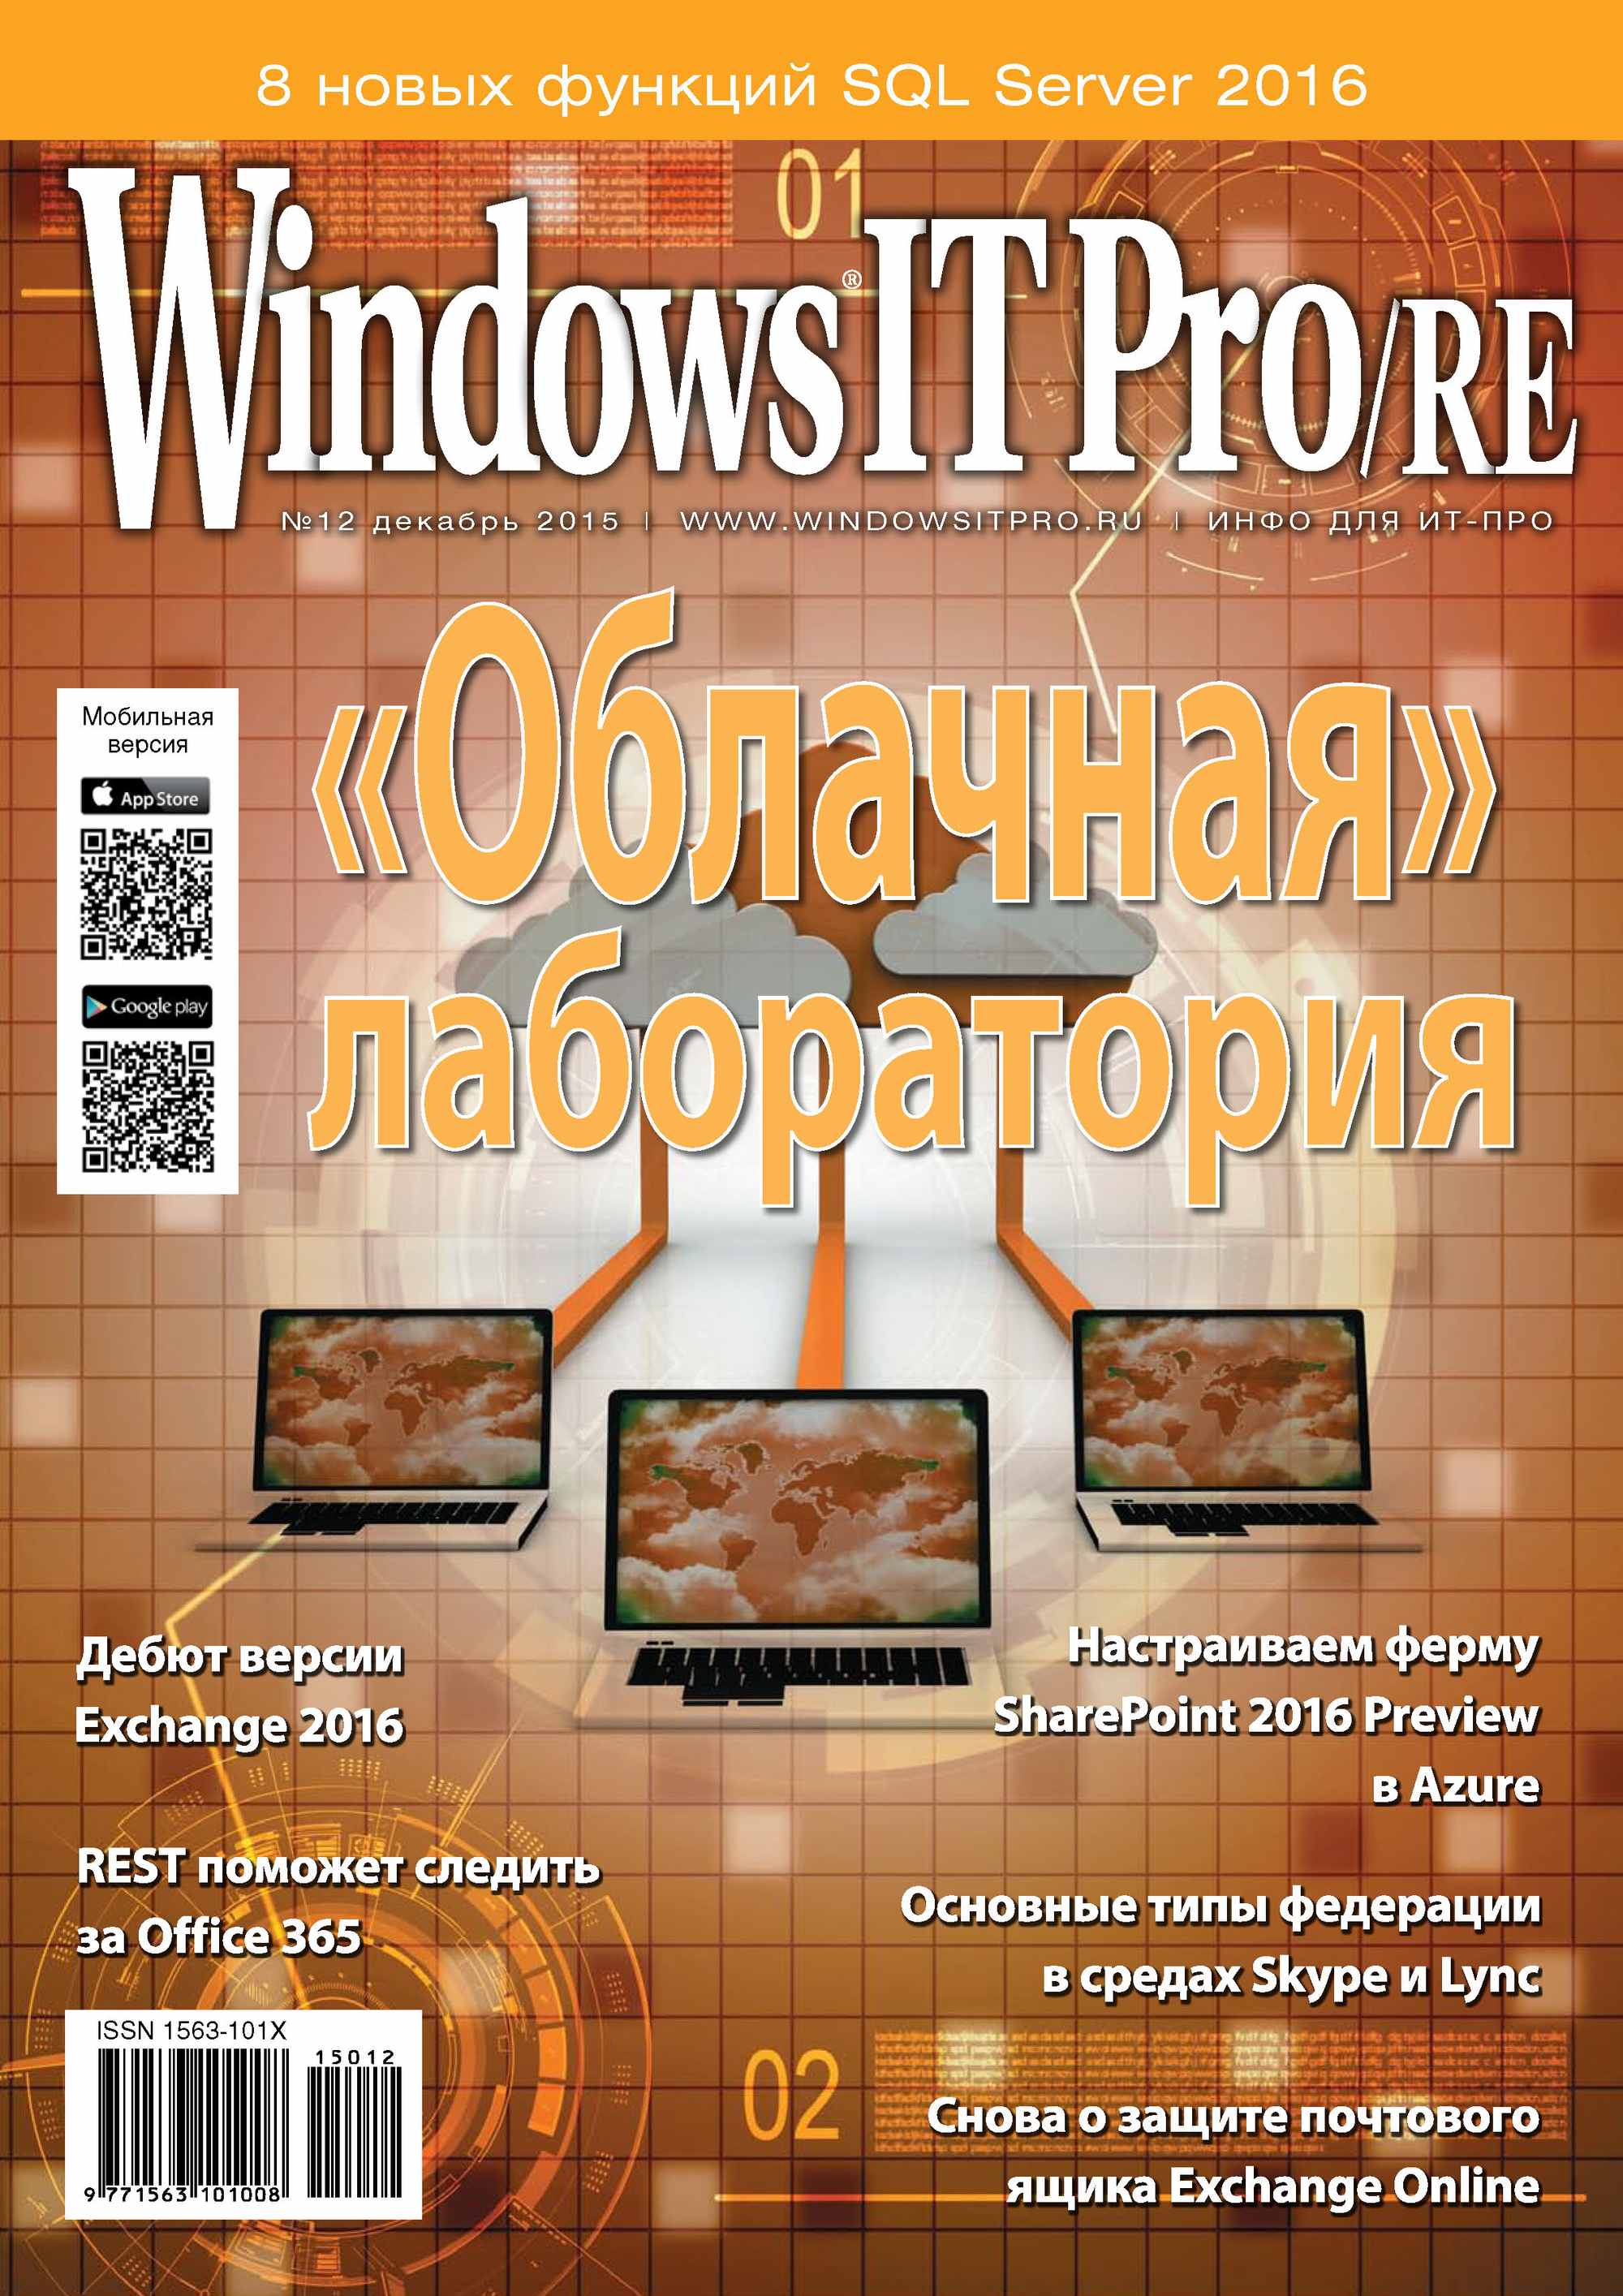 Книга Windows IT Pro 2015 Windows IT Pro/RE №12/2015 созданная Открытые системы может относится к жанру компьютерные журналы, ОС и сети, программы. Стоимость электронной книги Windows IT Pro/RE №12/2015 с идентификатором 14107184 составляет 484.00 руб.